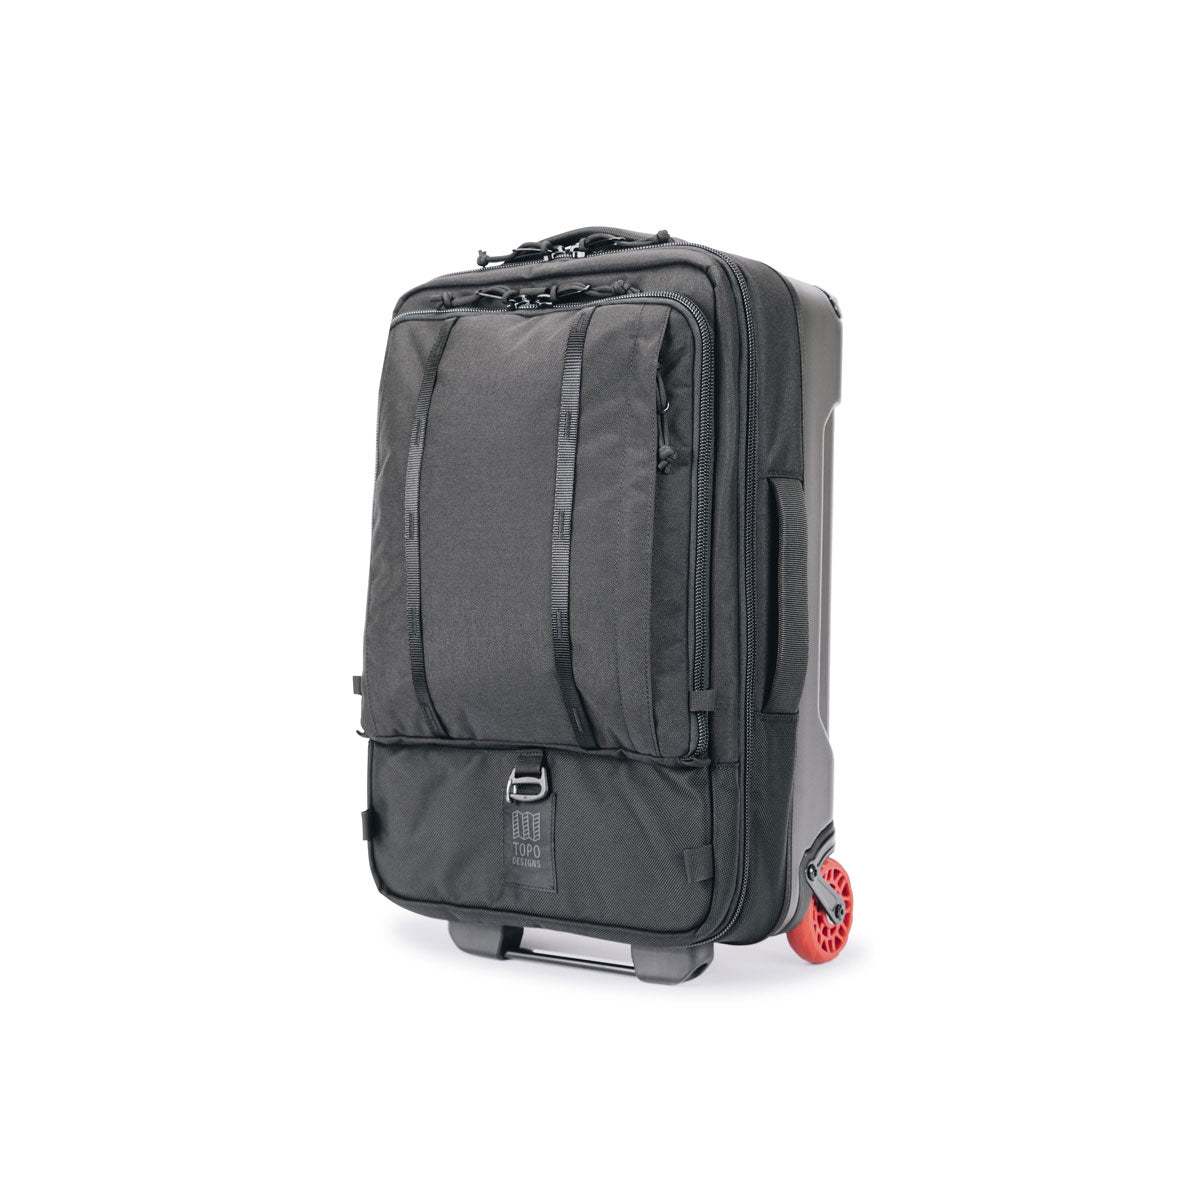 Topo Designs : Global Travel Bag Roller 44L : Black/Black